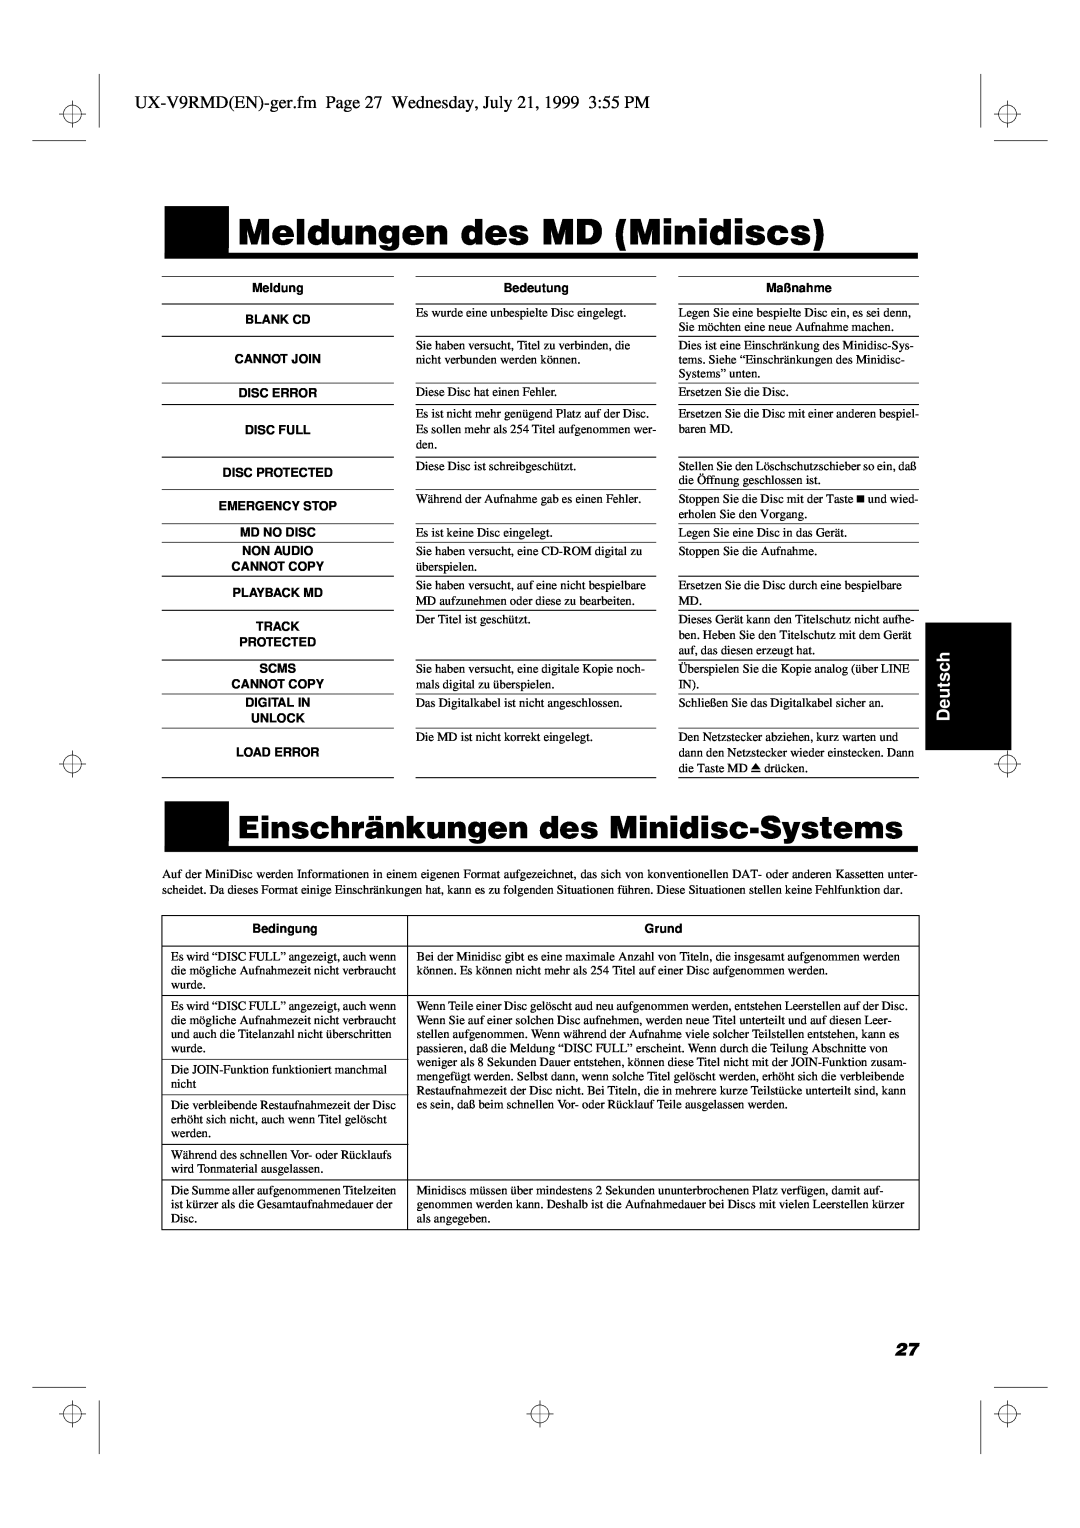 JVC UX-V9RMD Meldungen des MD Minidiscs, Einschränkungen des Minidisc-Systems, Deutsch, Bedeutung, Maßnahme, Bedingung 